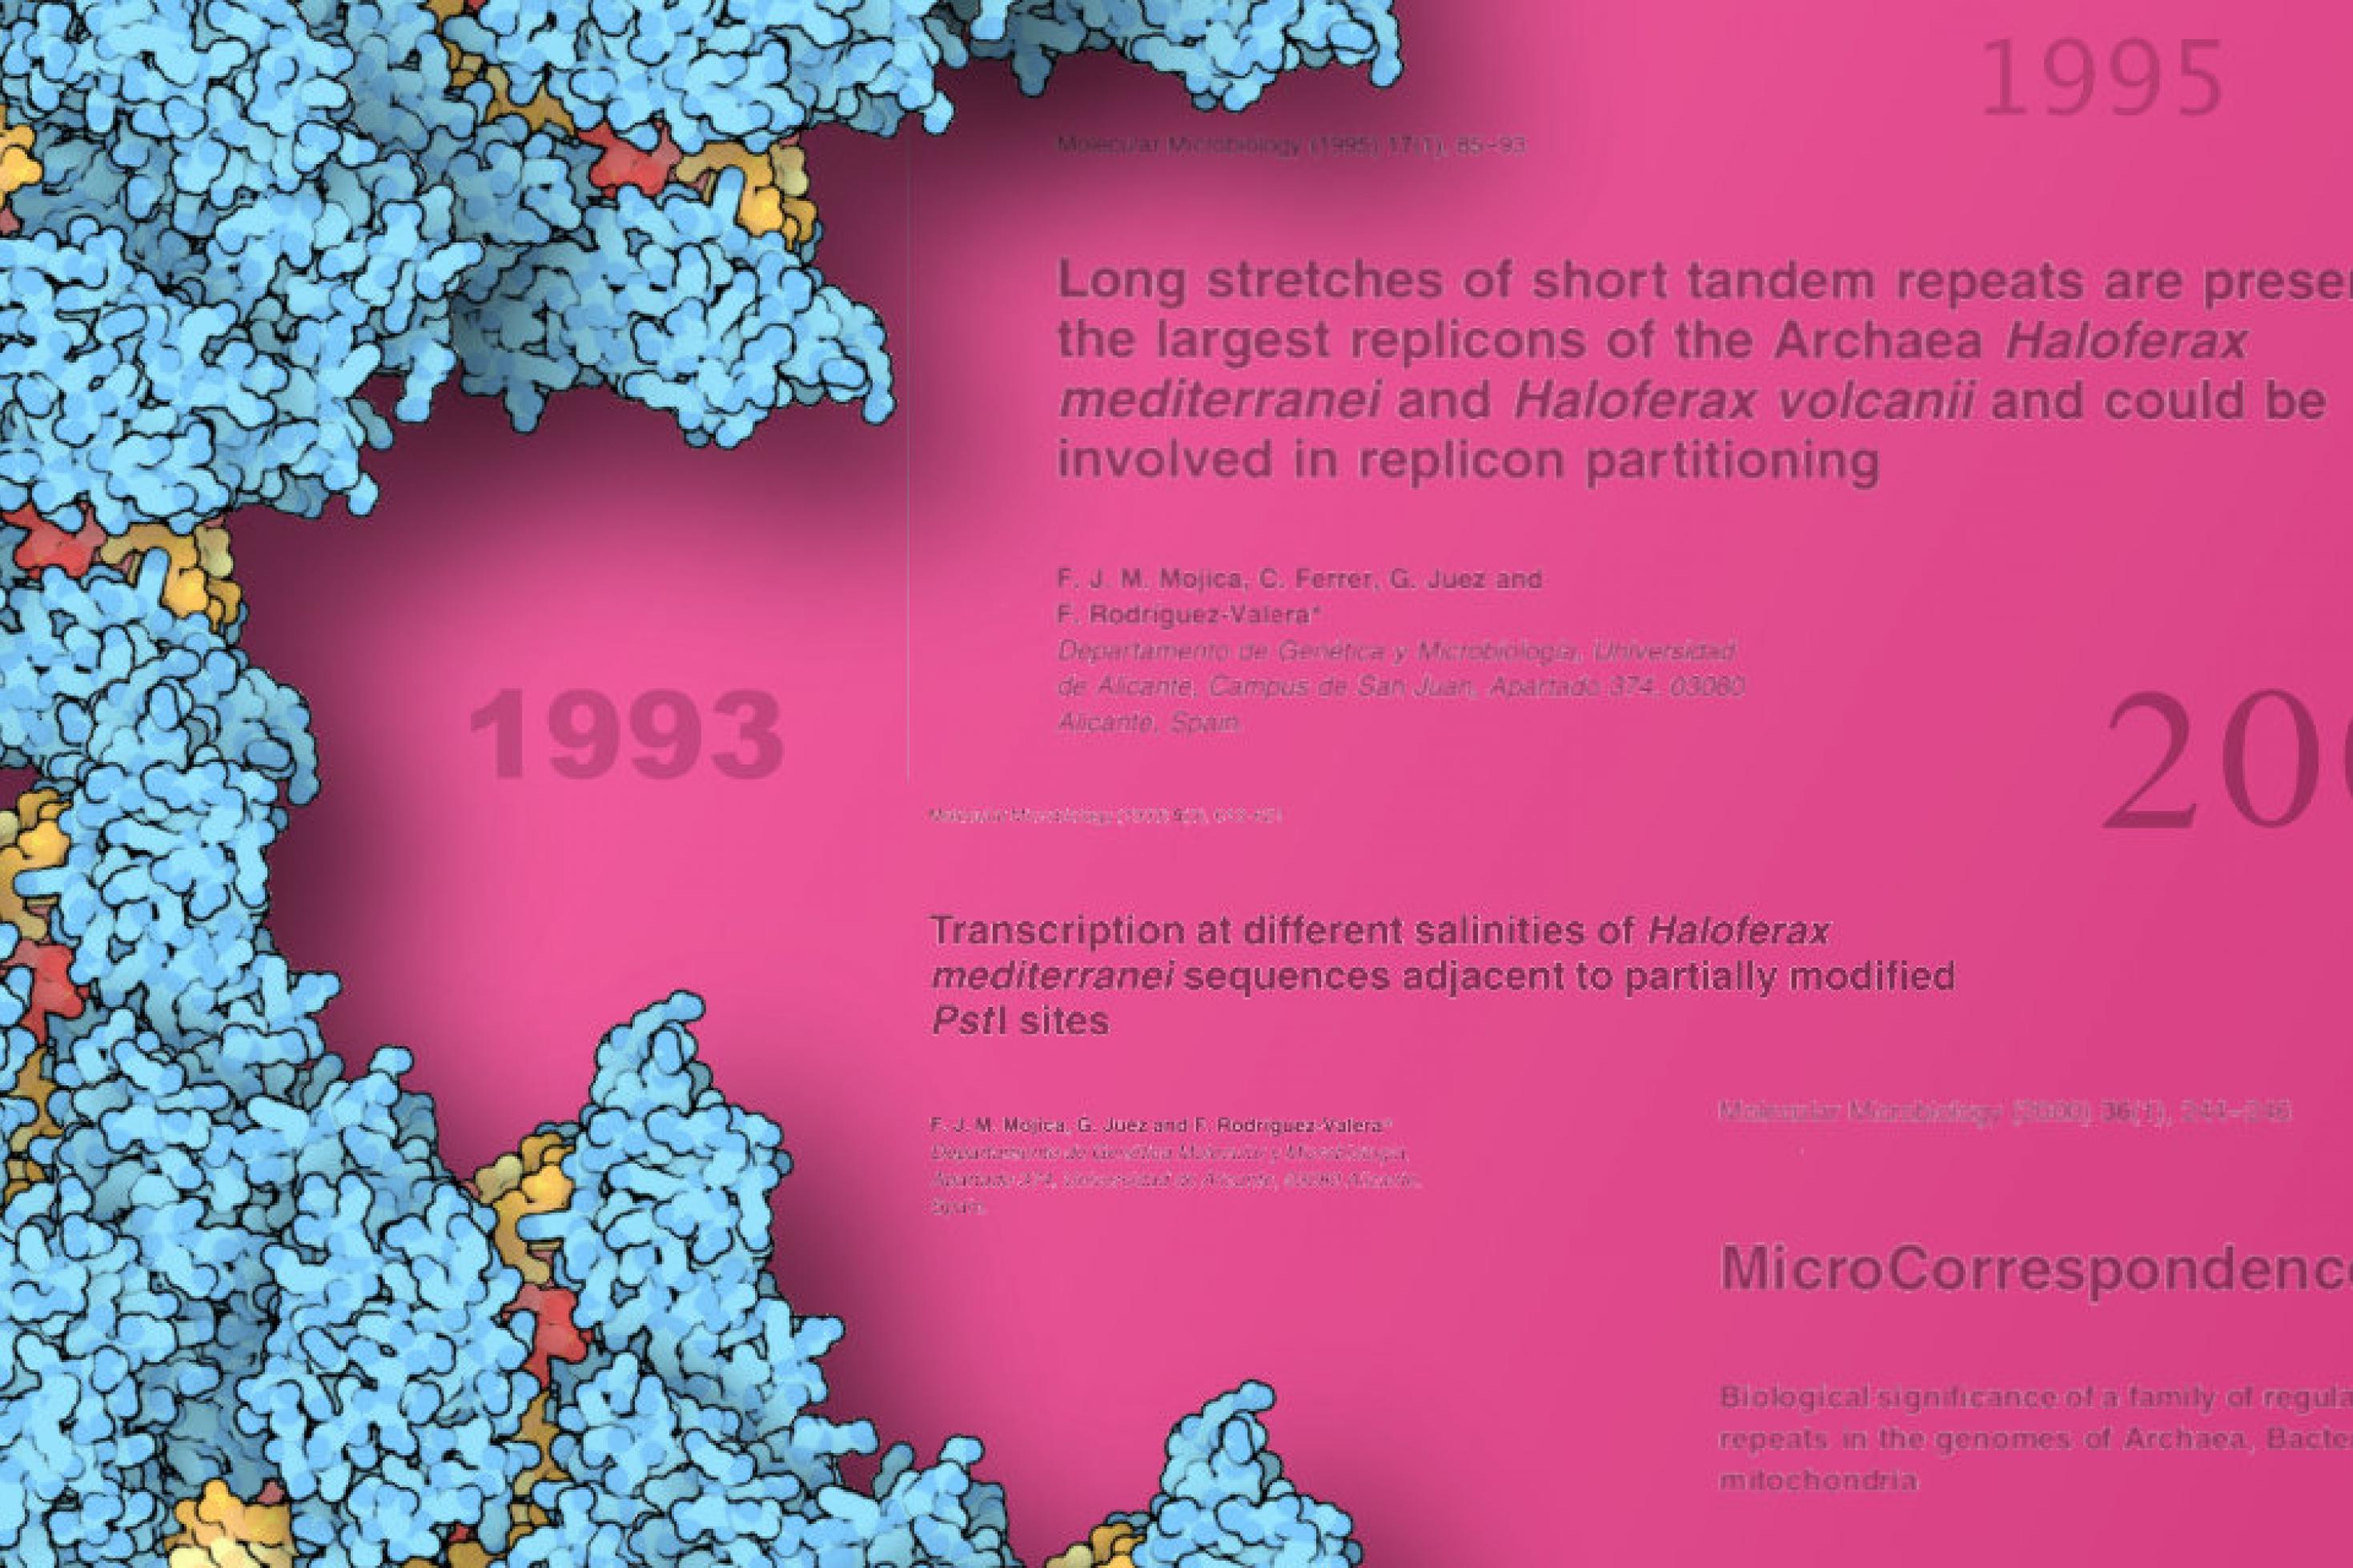 Übereinander gelegte Grafiken des Cas9-Proteins umkränzen in der linken Bildhälfte vor lilafarbenem Hintergrund wichtige Titel und Jahreszahlen der CRISPR-Historie, die Zahlen sind 1993, 1995 und 2000.